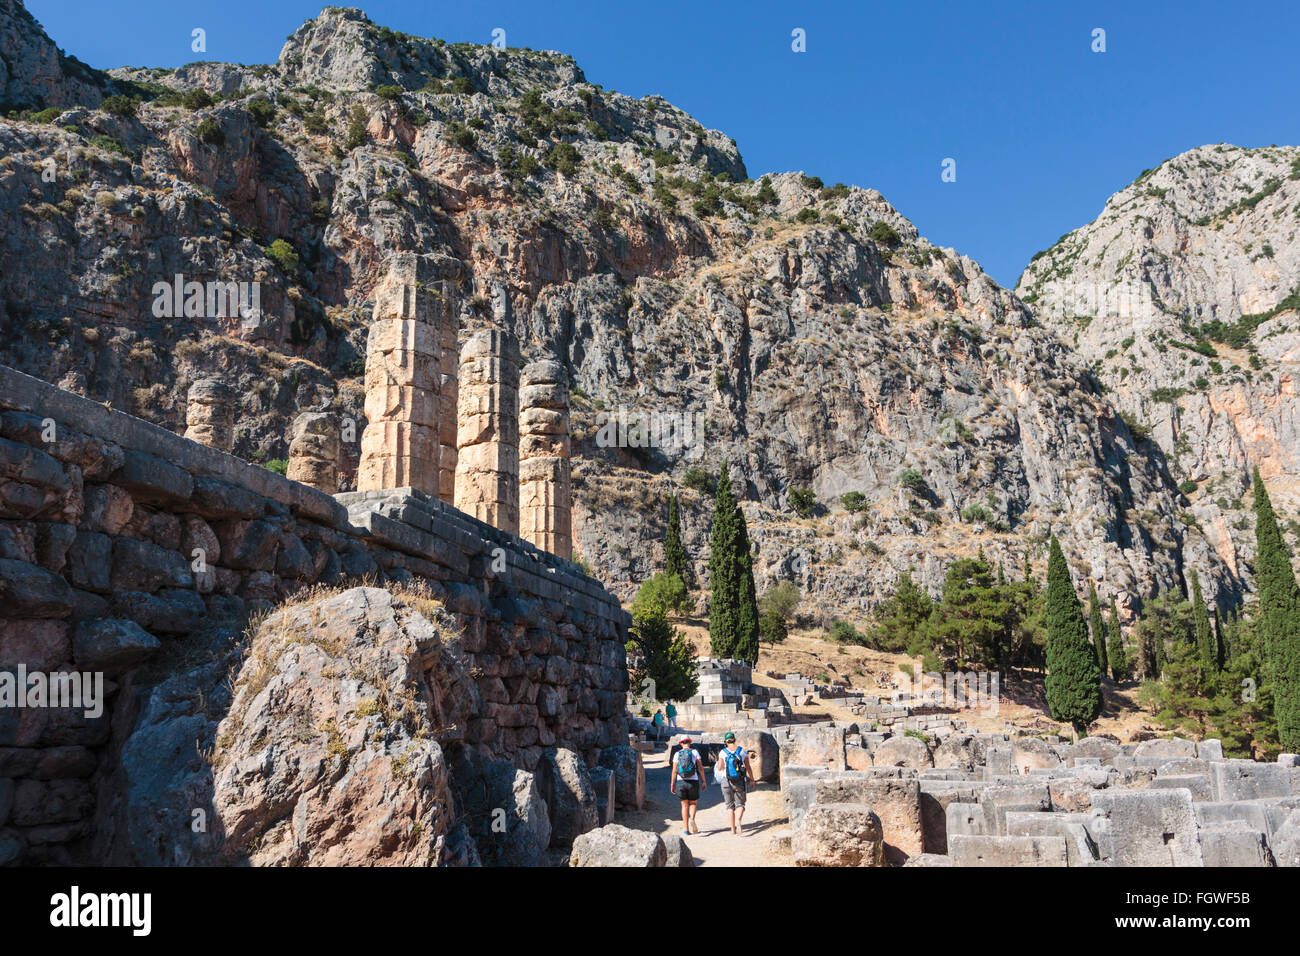 Ancient Delphi, Phocide, Grèce. Restes du Temple d'Apollon. Ruines visibles aujourd'hui datent du 4e siècle avant J.-C. Banque D'Images